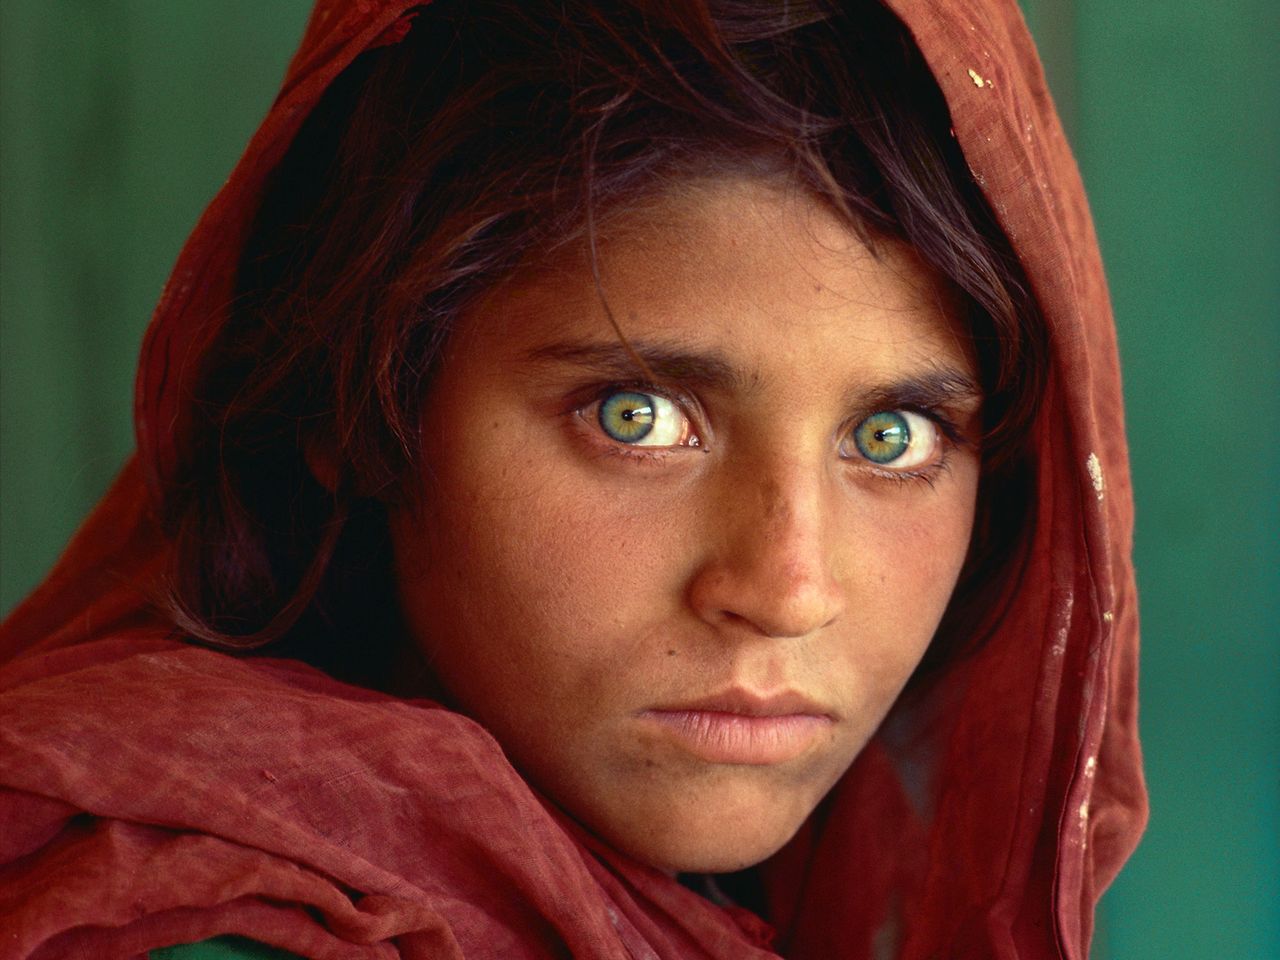 Kim jest Szarbat Gula - "afgańska dziewczyna" z portretu Steve'a McCurry?